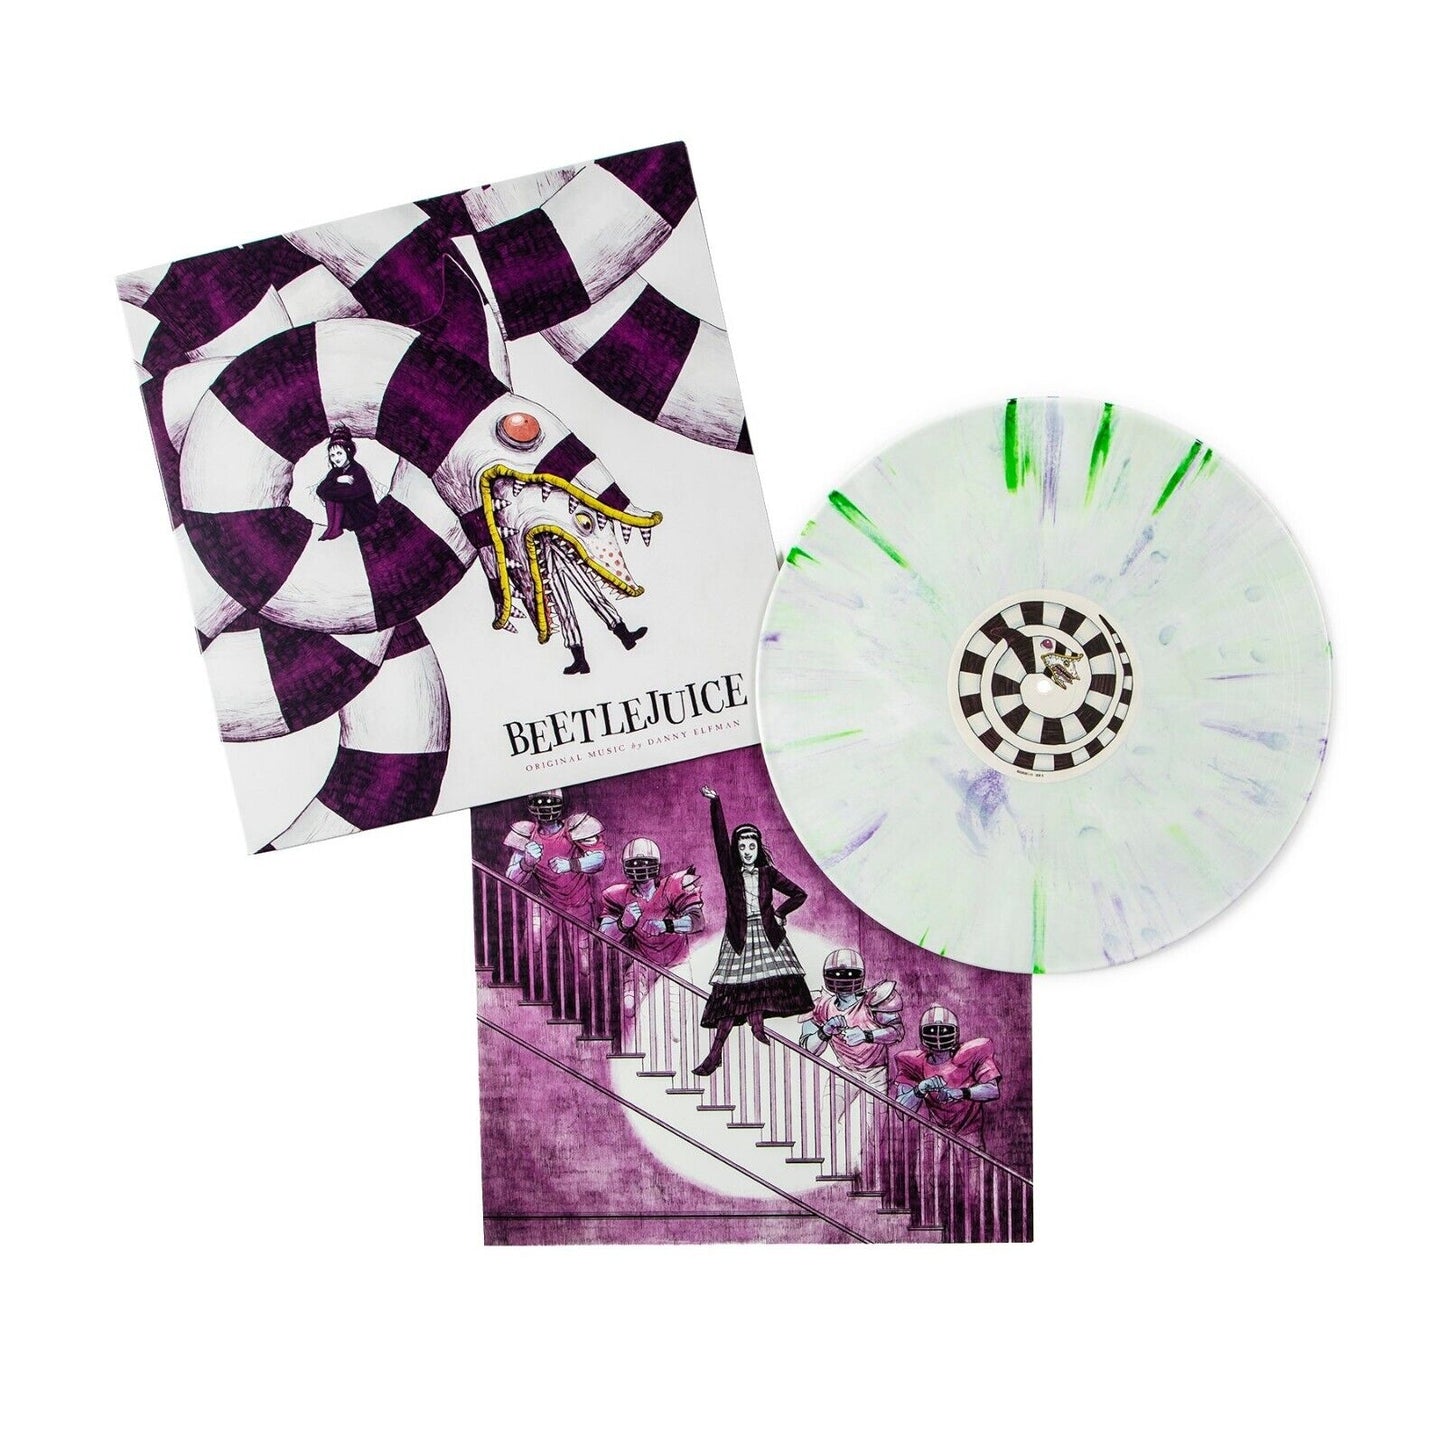 Danny Elfman – Beetlejuice Soundtrack – Farb-Vinyl-Schallplatte „Beetlejuice Swirl“.